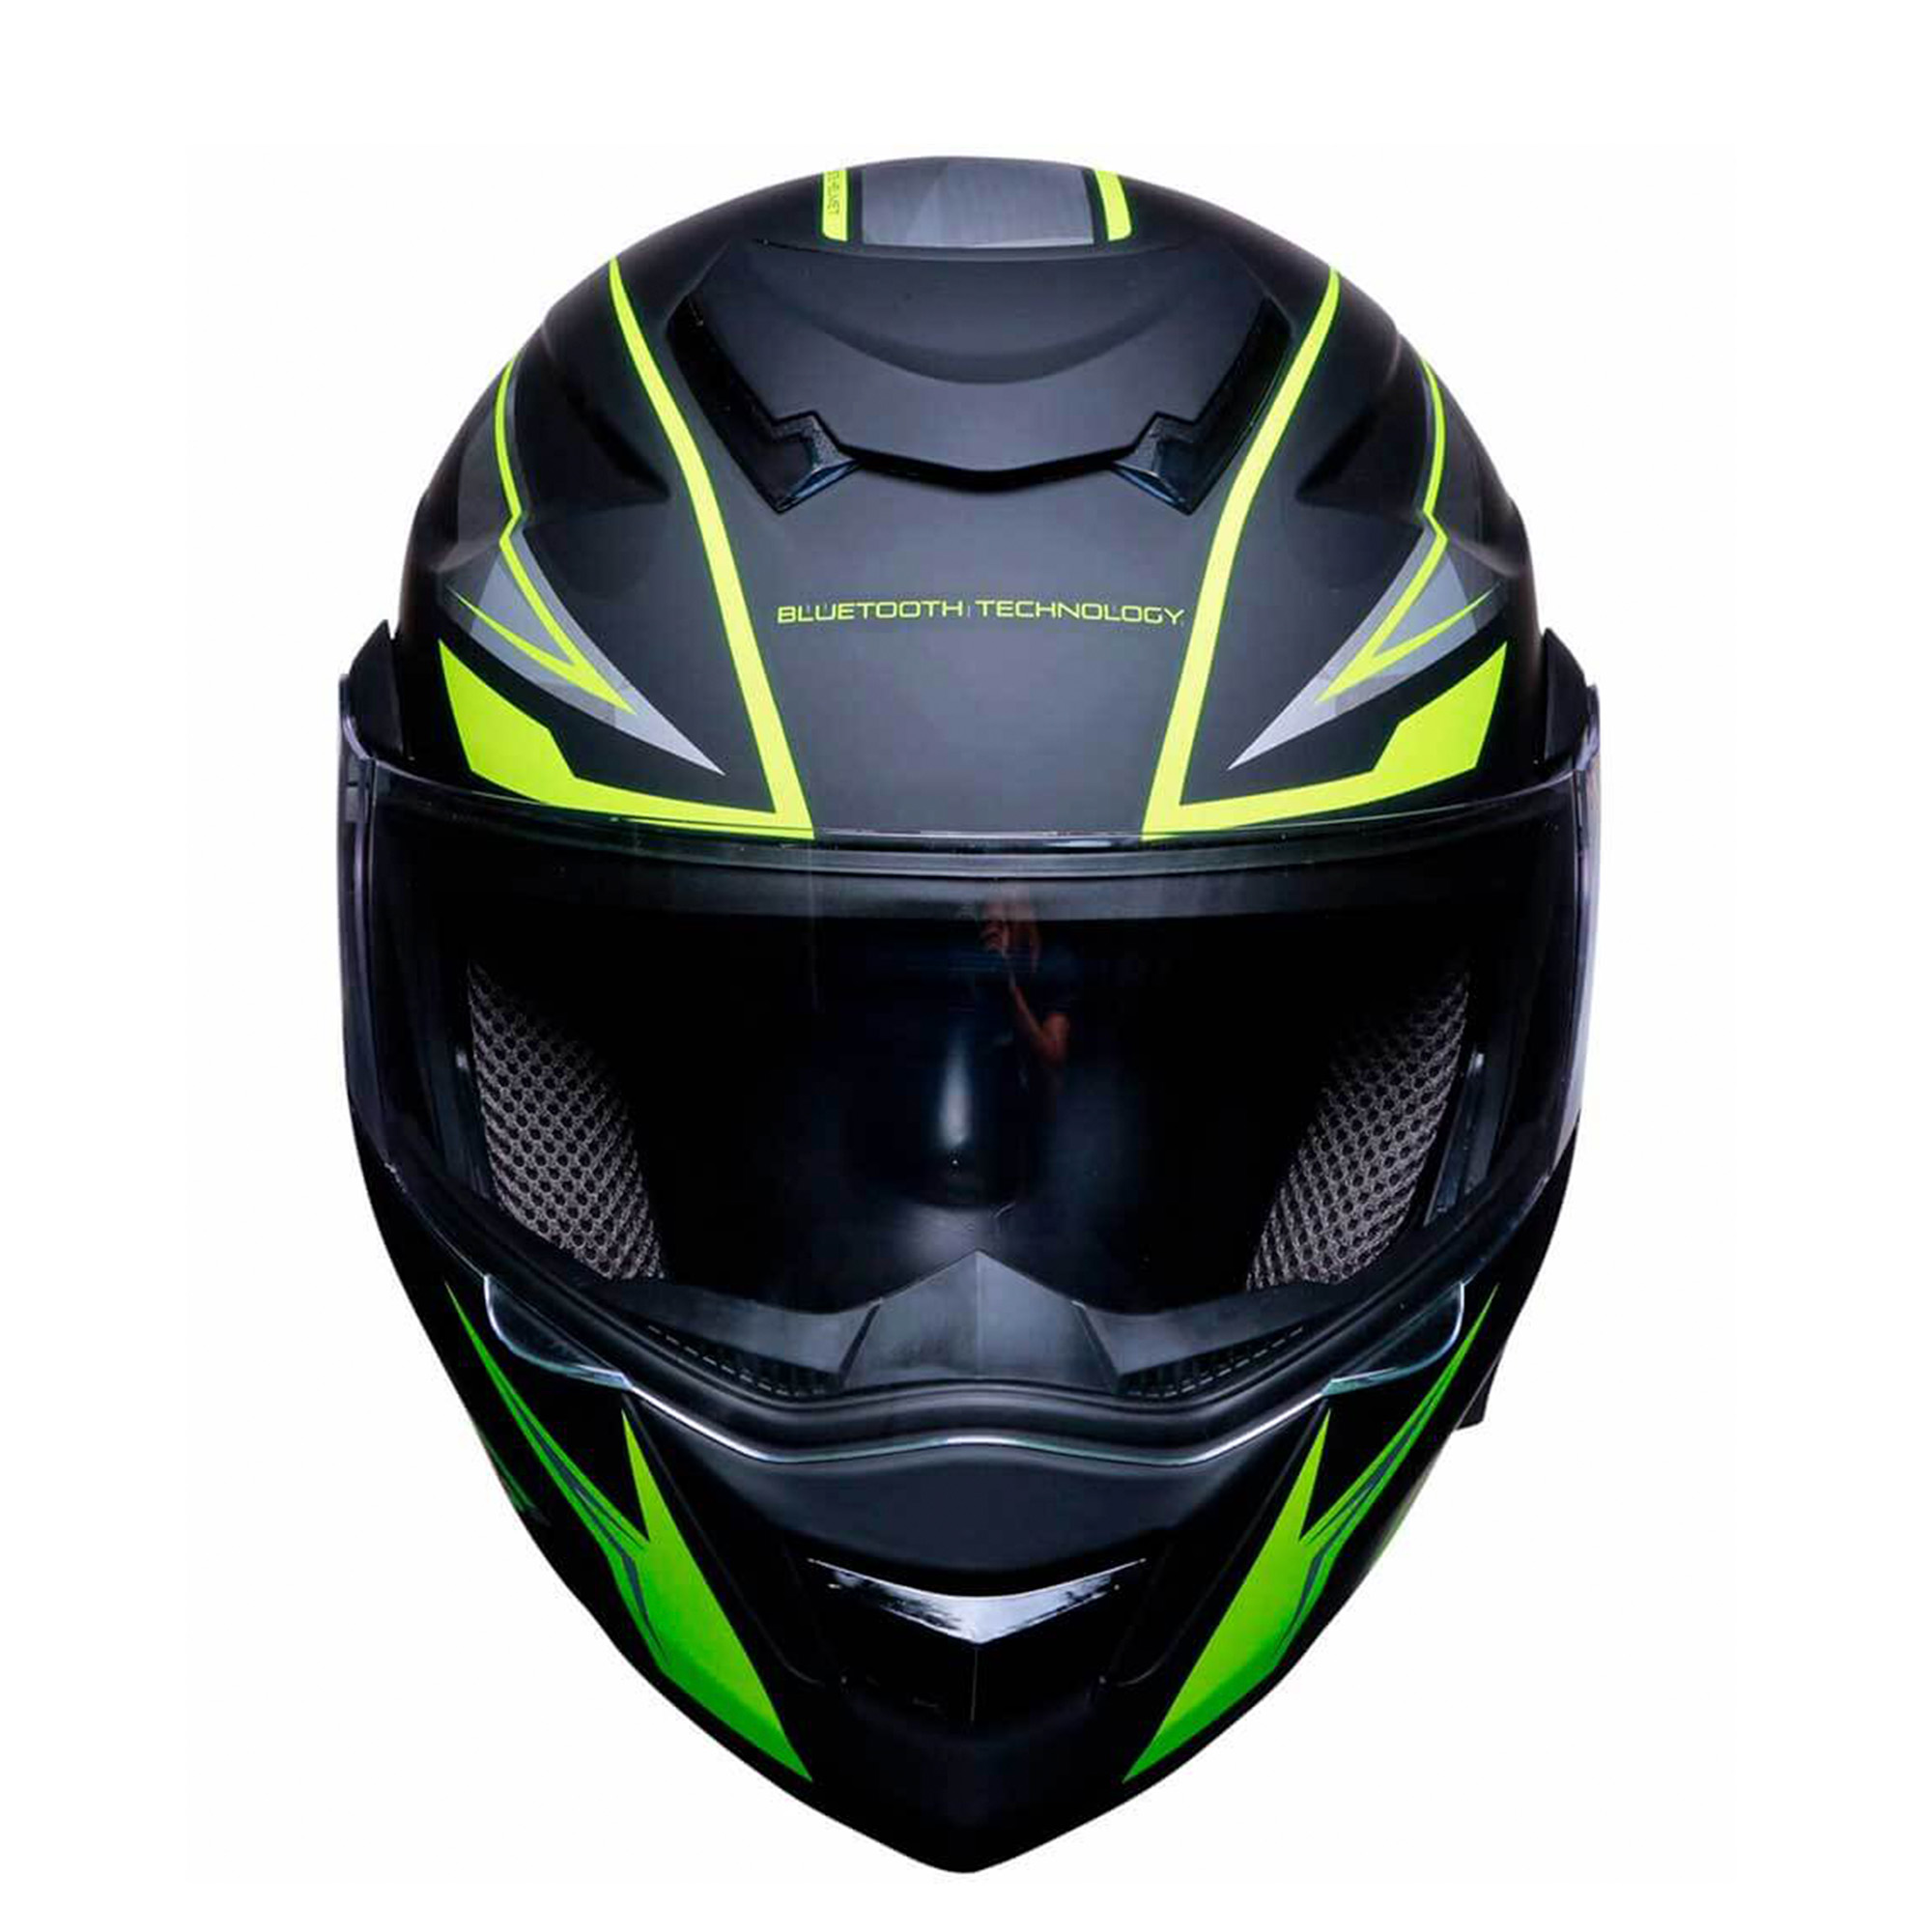 Motometa Detalles Casco para motociclista talla L abatible con Bluetooth  Ventec exoskeleton Negro / Amarillo GT1 Vento